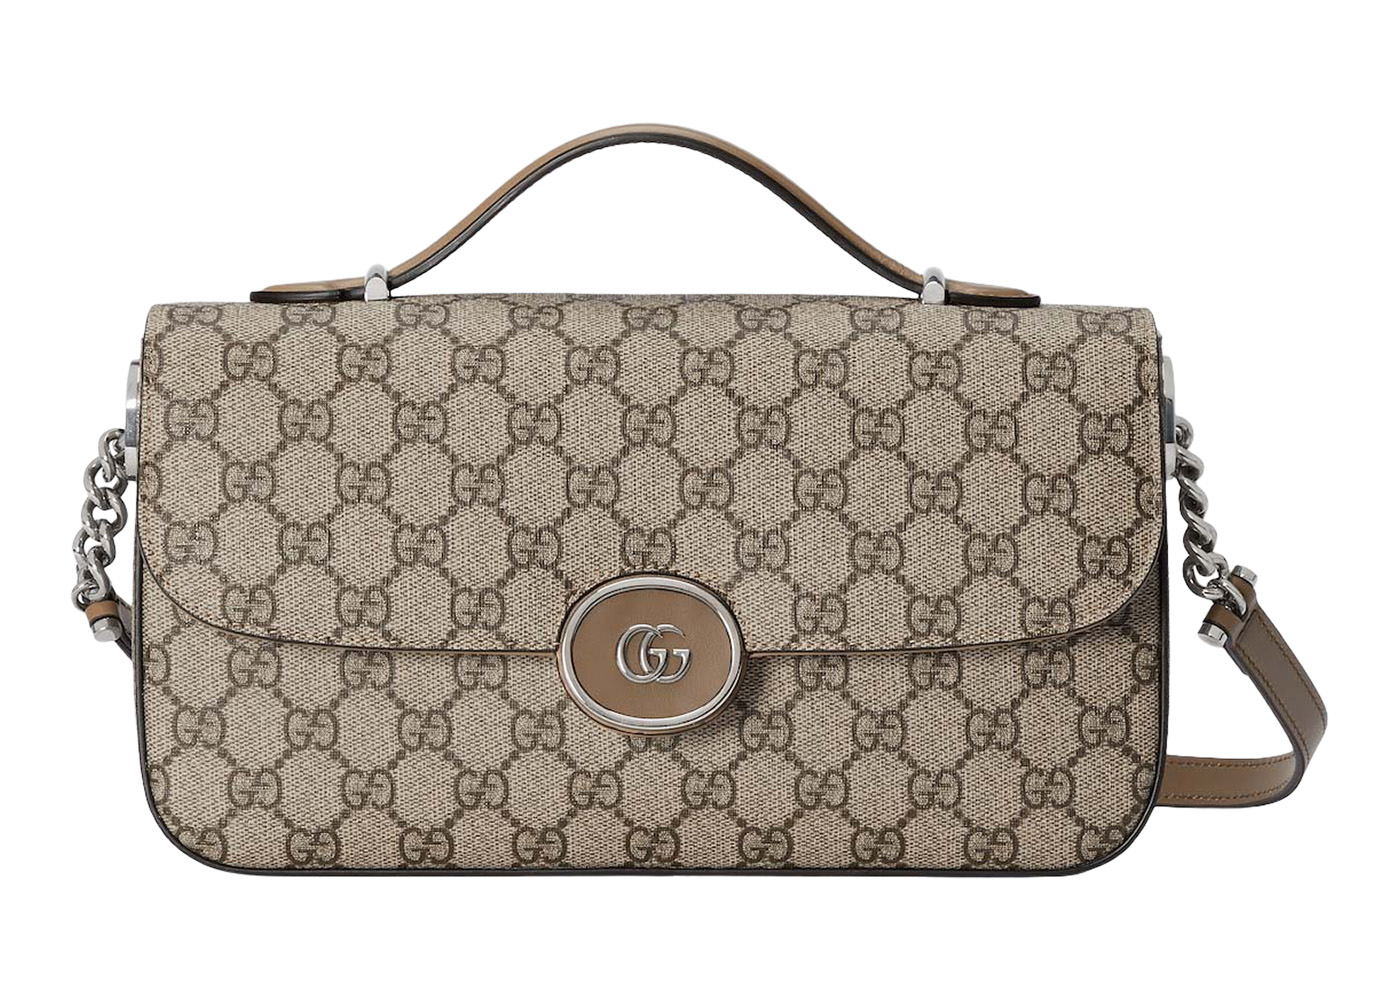 Gucci GG Small Tote Bag Beige/Ebony